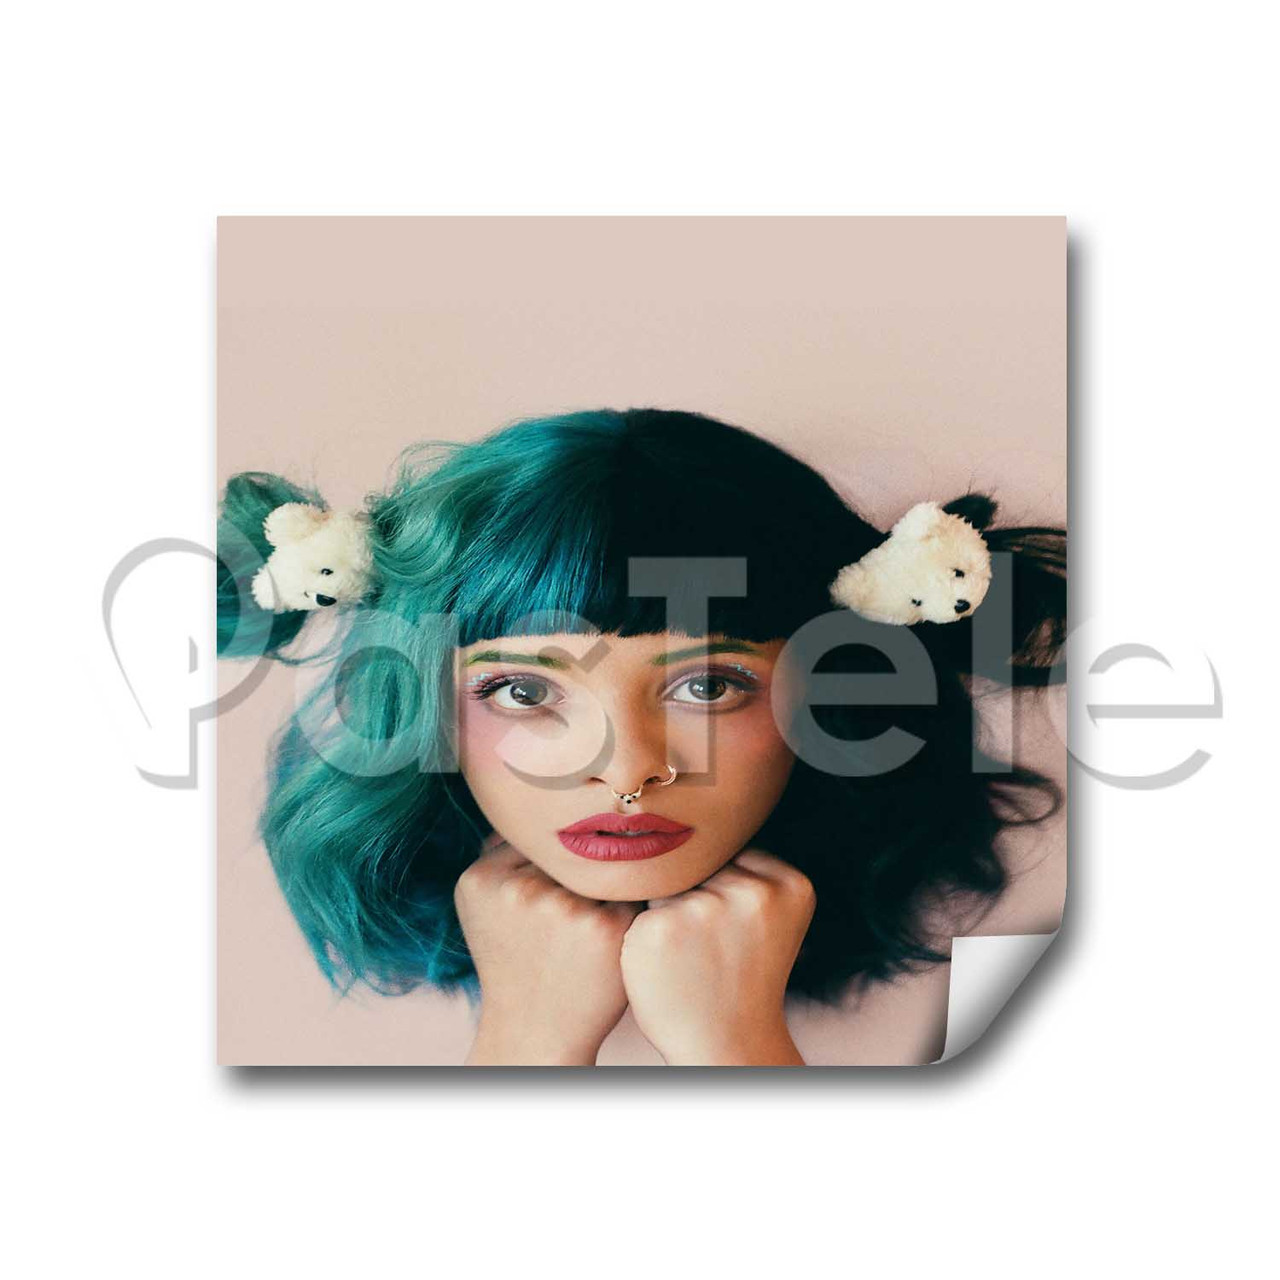 Melanie Martinez Custom Stickers White Transparent Vinyl Decals